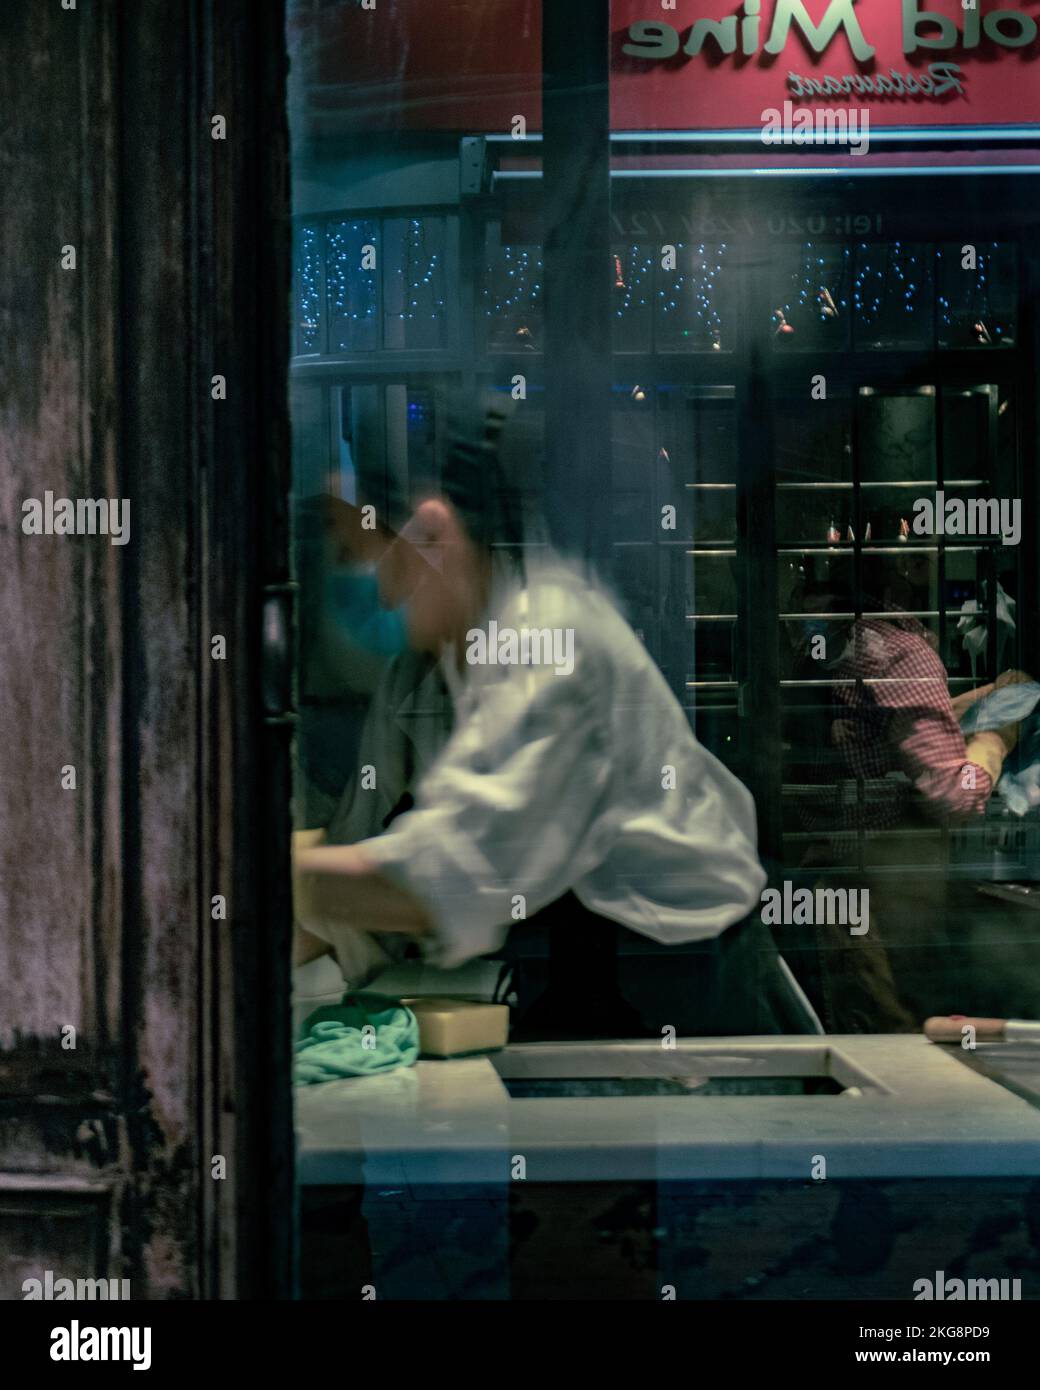 Una lavoratrice in un ristorante a Soho, Londra, che eseguiva un'attività, fotografata attraverso una finestra con condensa. Foto Stock